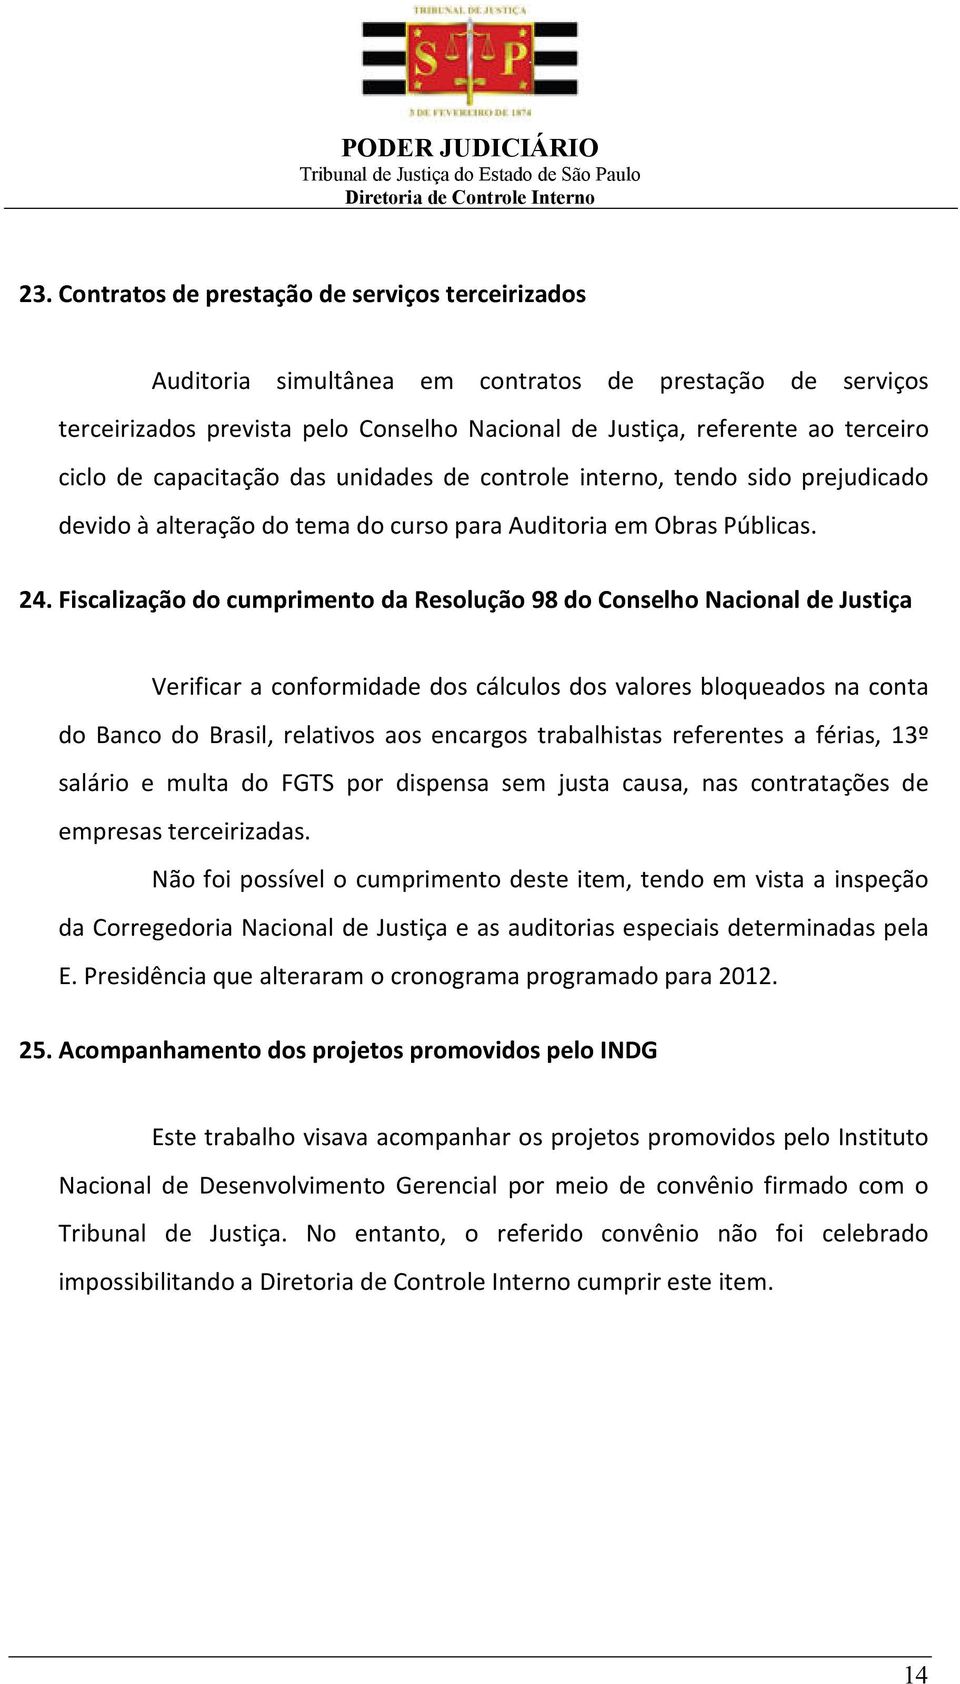 Fiscalização do cumprimento da Resolução 98 do Conselho Nacional de Justiça Verificar a conformidade dos cálculos dos valores bloqueados na conta do Banco do Brasil, relativos aos encargos